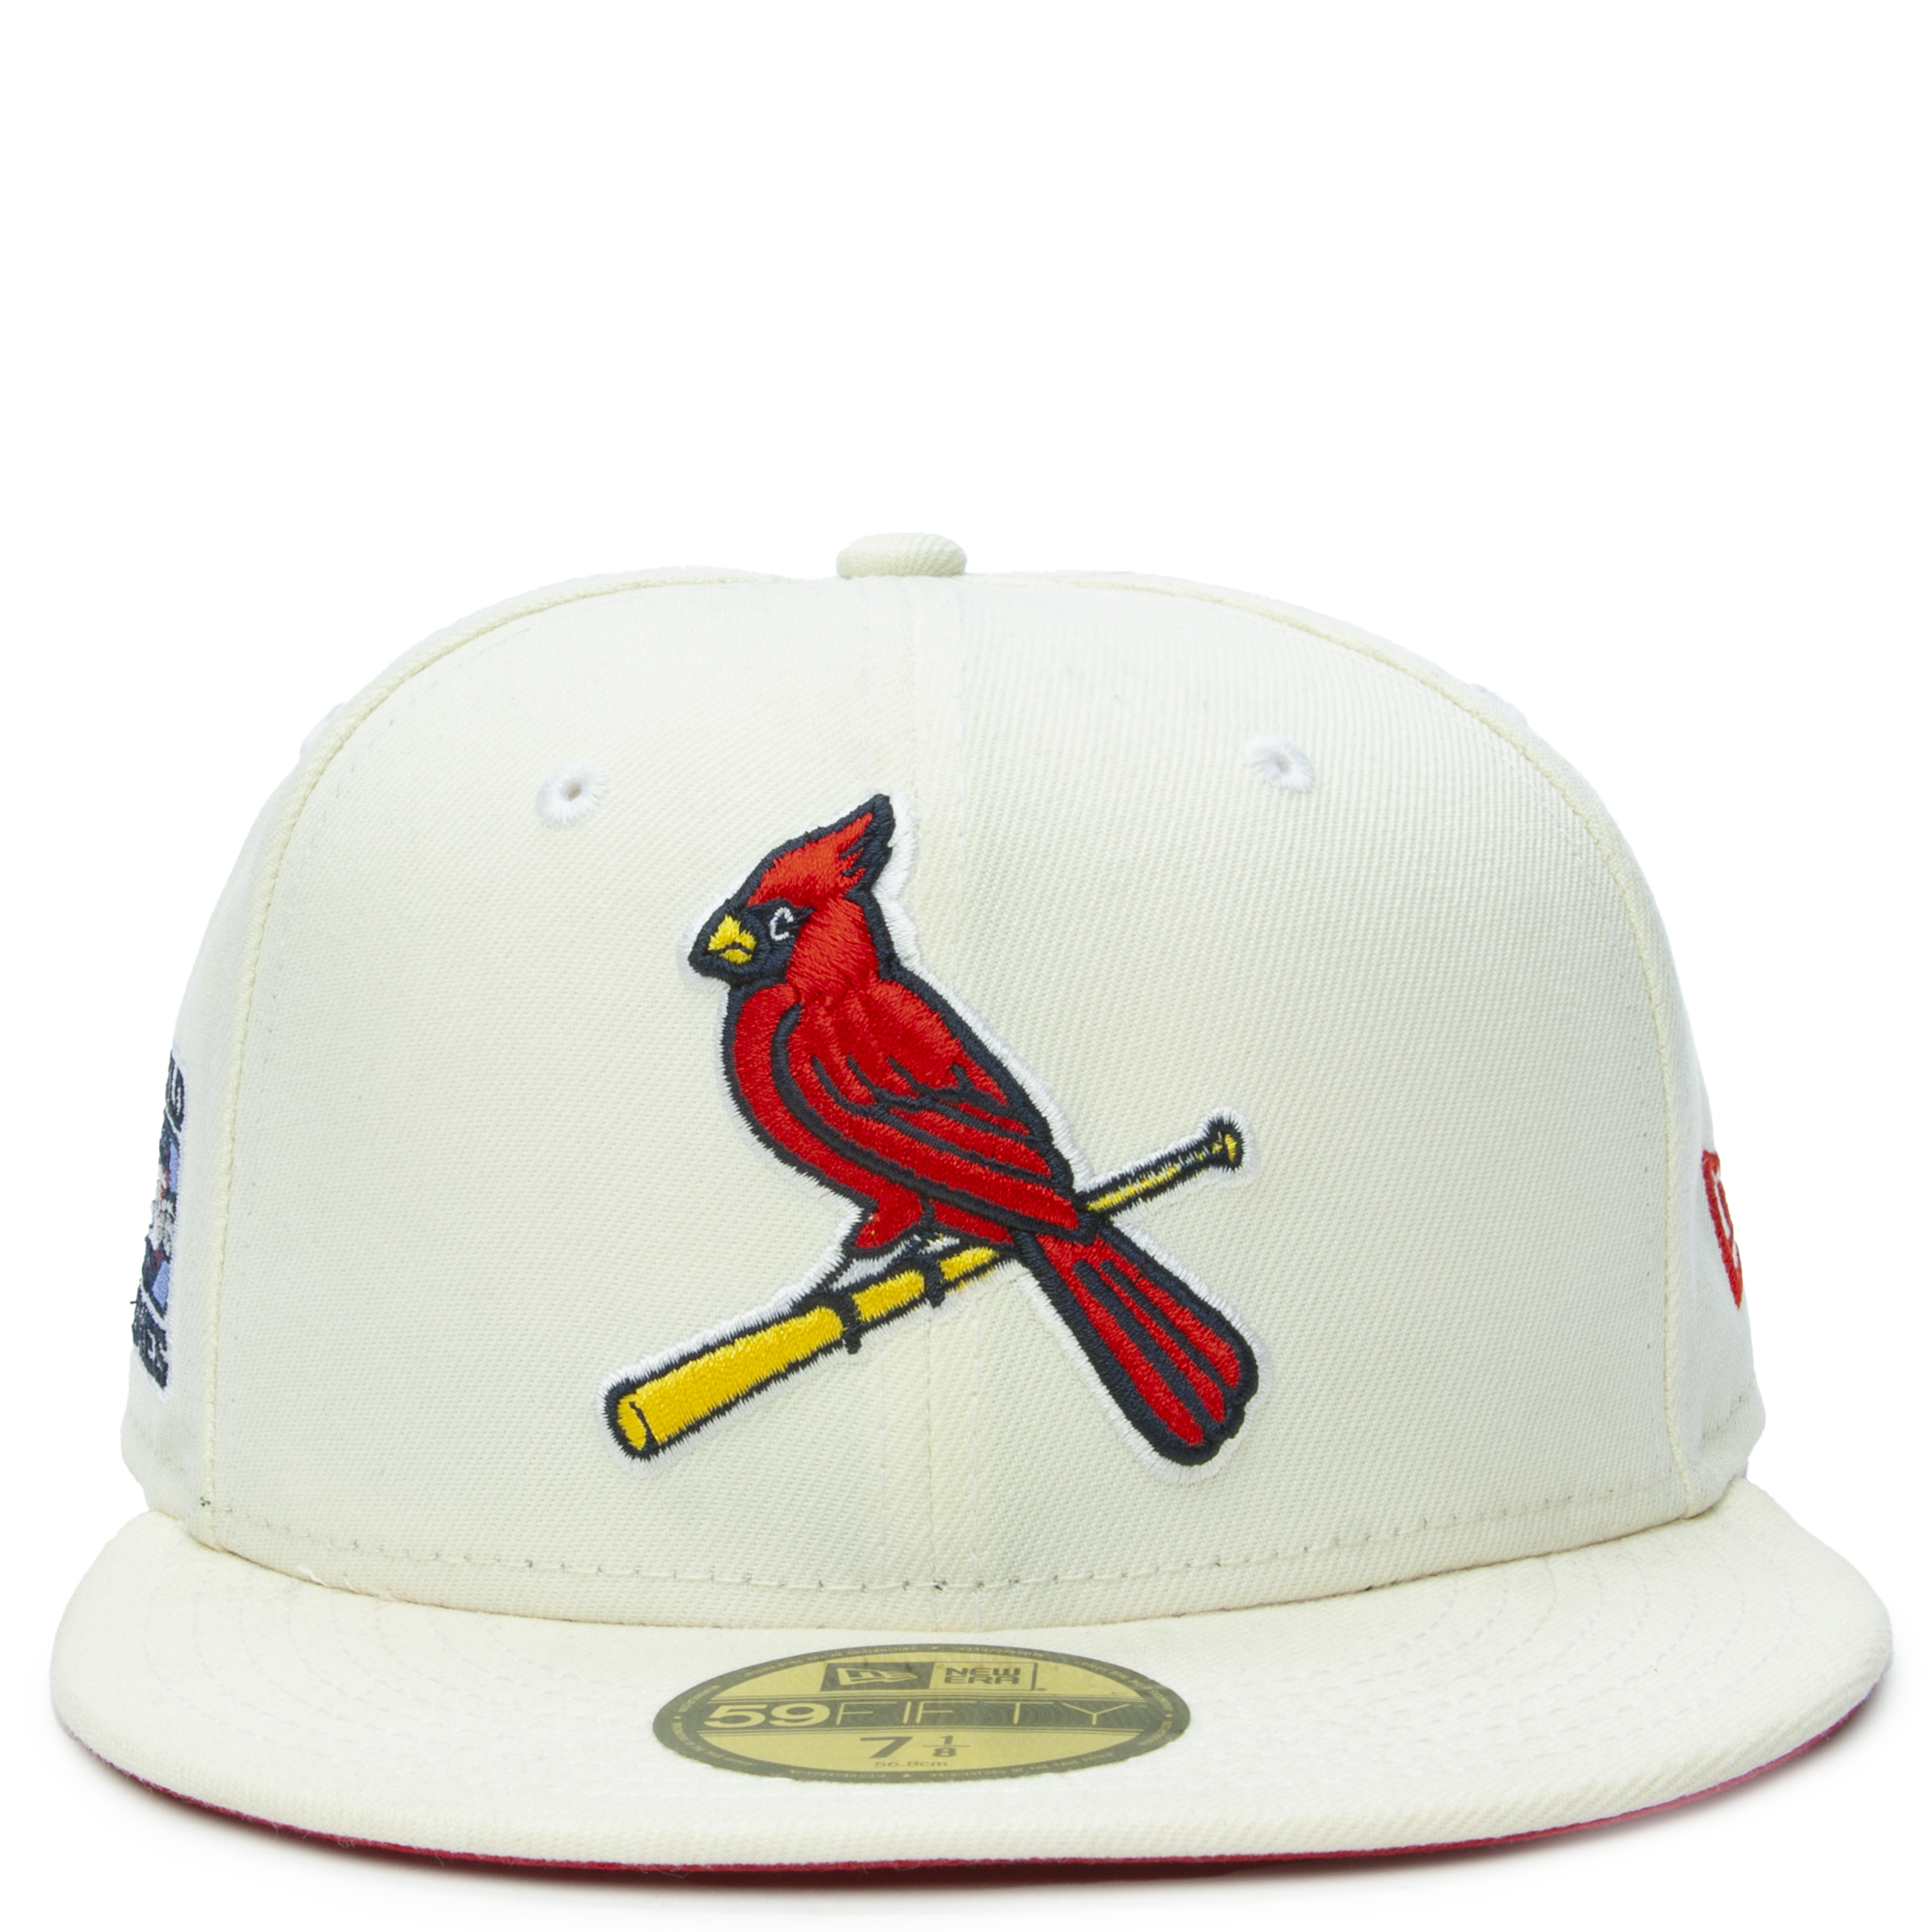 Official New Era St Louis Cardinals MLB London Series Team Trucker